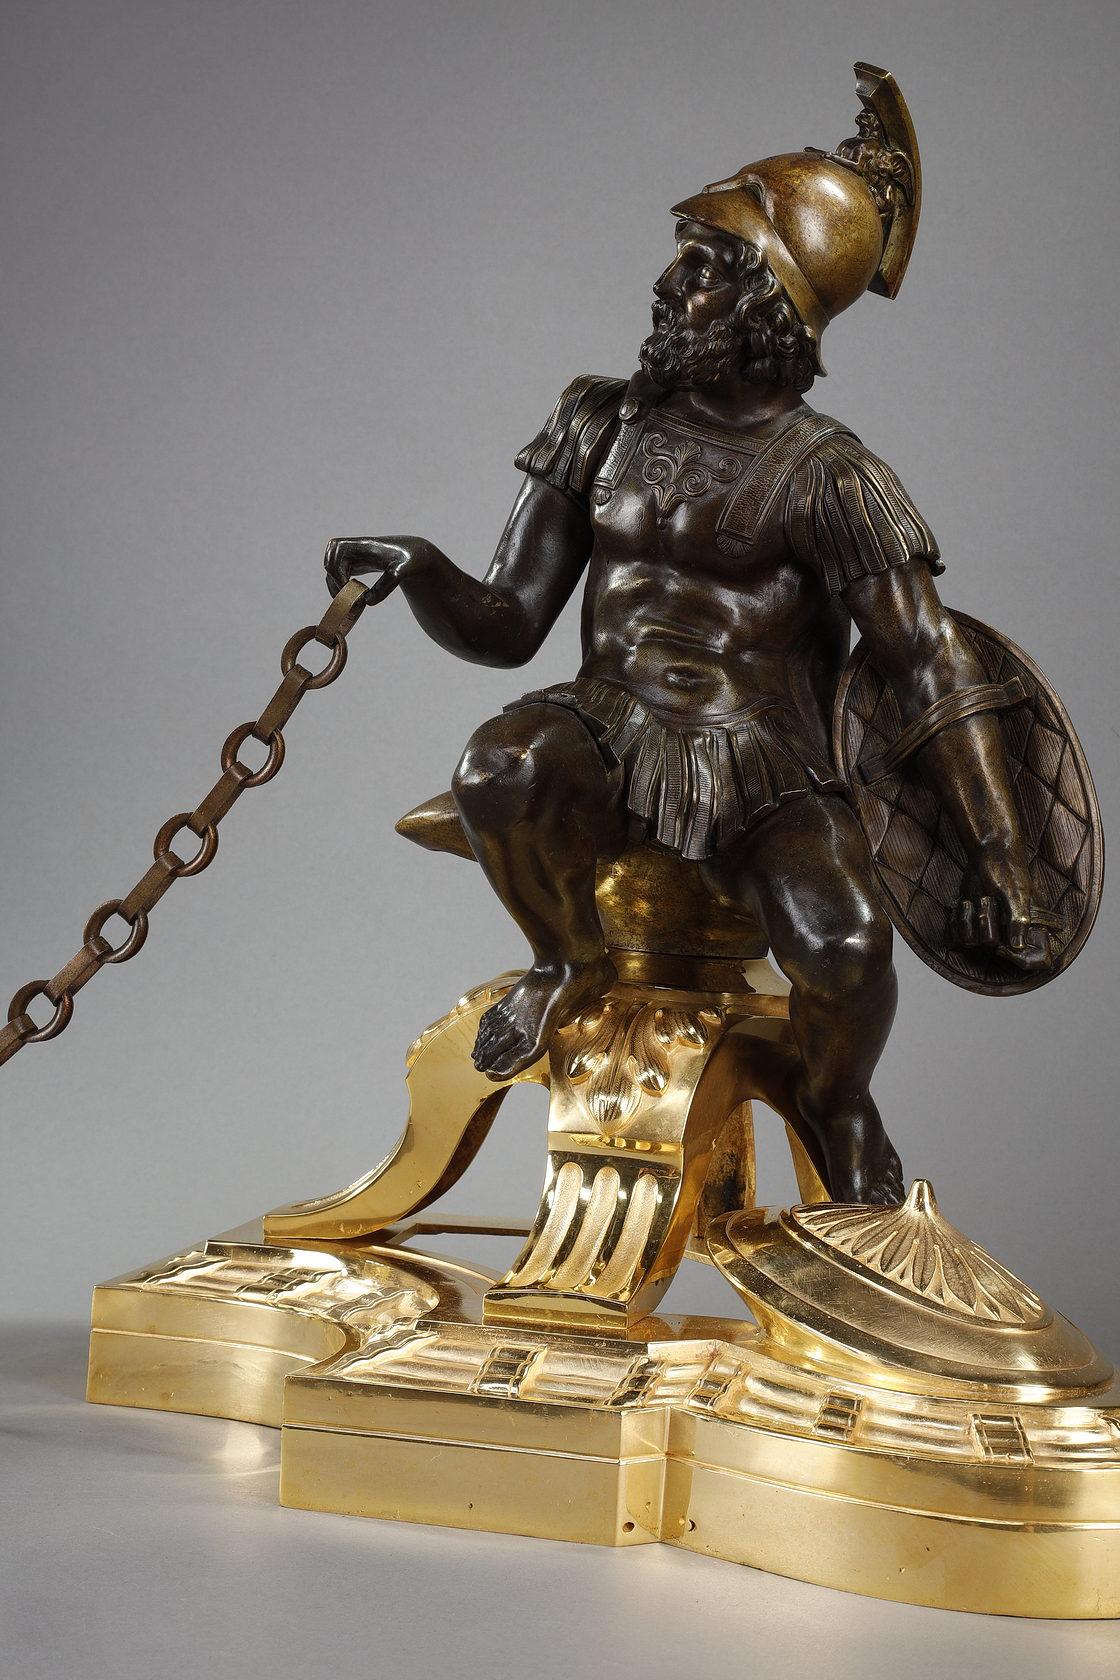 Une paire de chenets en bronze patiné et doré représentant un soldat et un mendiant. L'une d'elles montre un soldat portant un casque macédonien avec un cimier en forme de sphinx, une cuirasse moulant sa forme et tenant un bouclier. L'autre montre